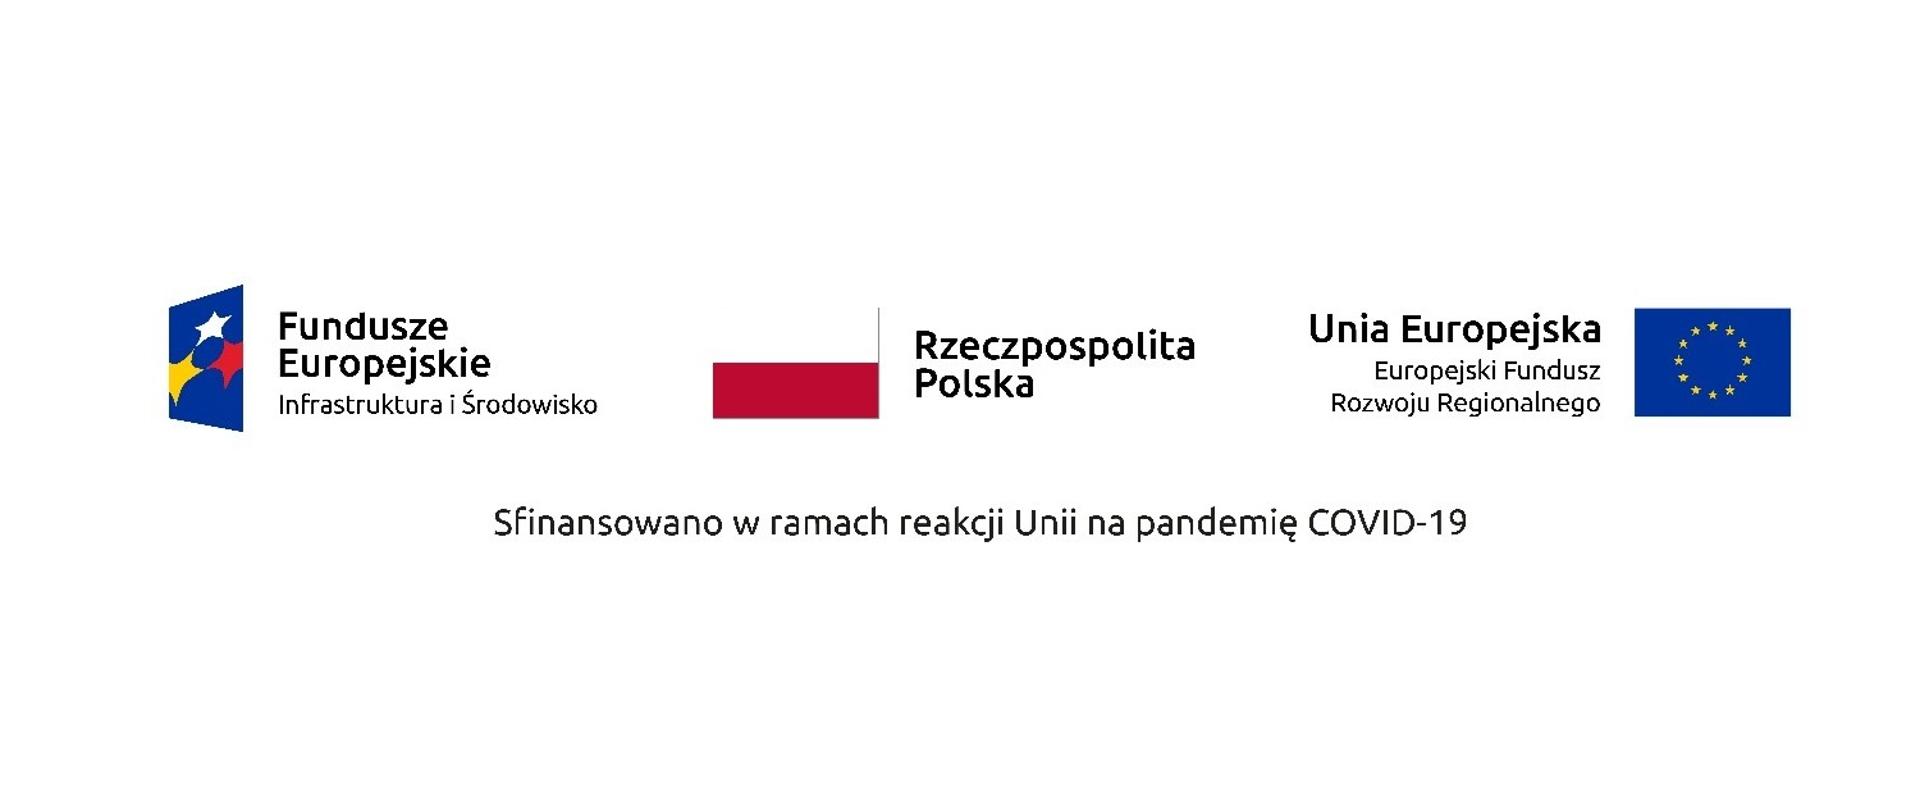 Fundusze Europejskie - Rzeczpospolita Polska - Unia Europejska